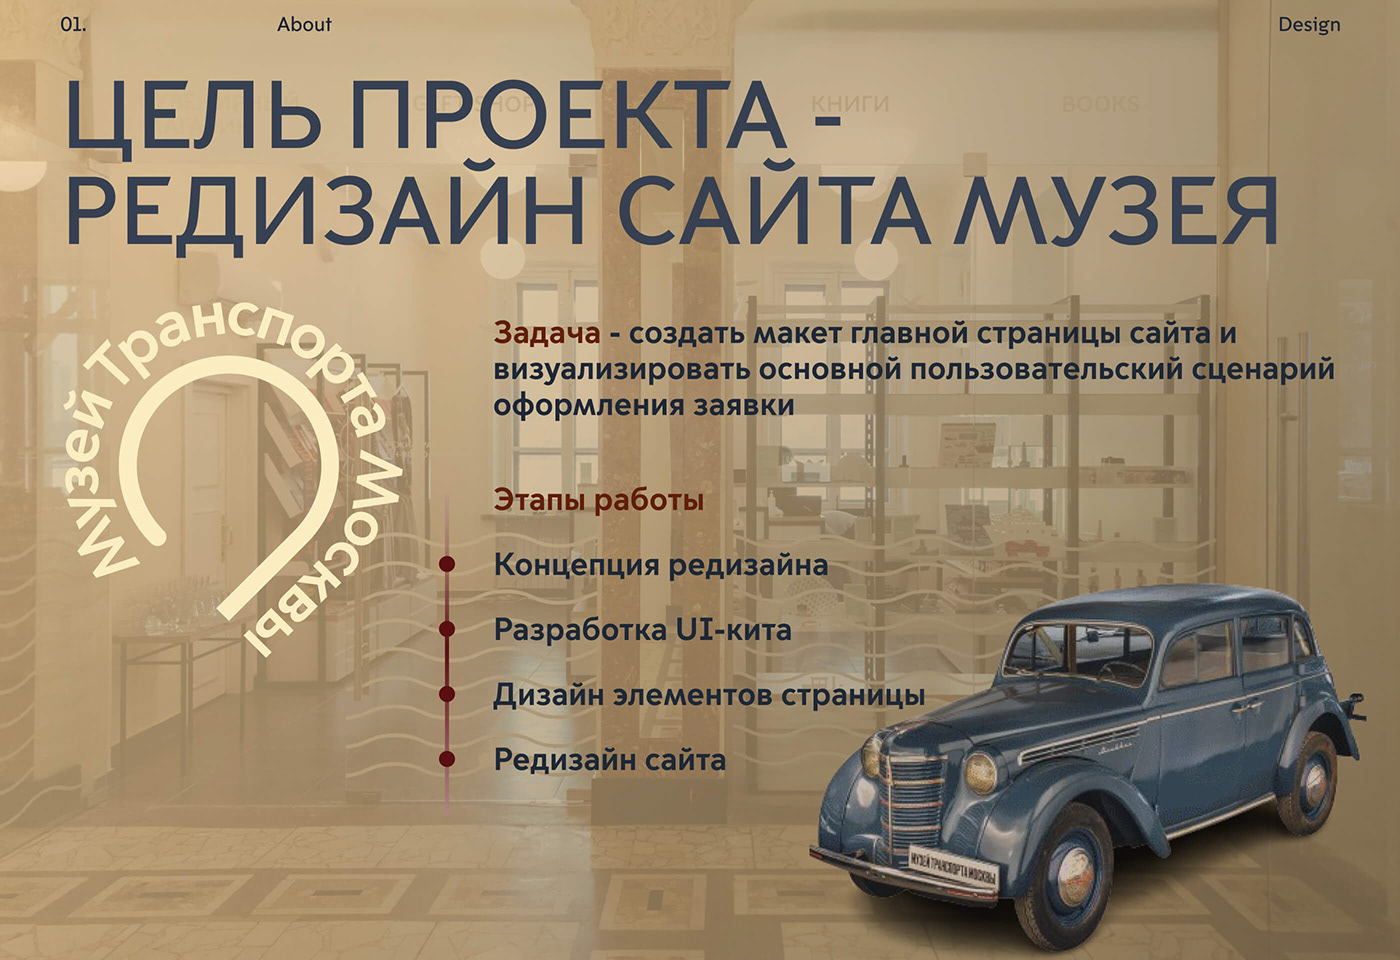 учебный проект веб-дизайн UI/UX Figma SkillBox редизайн сайта Музей Транспорта Москвы